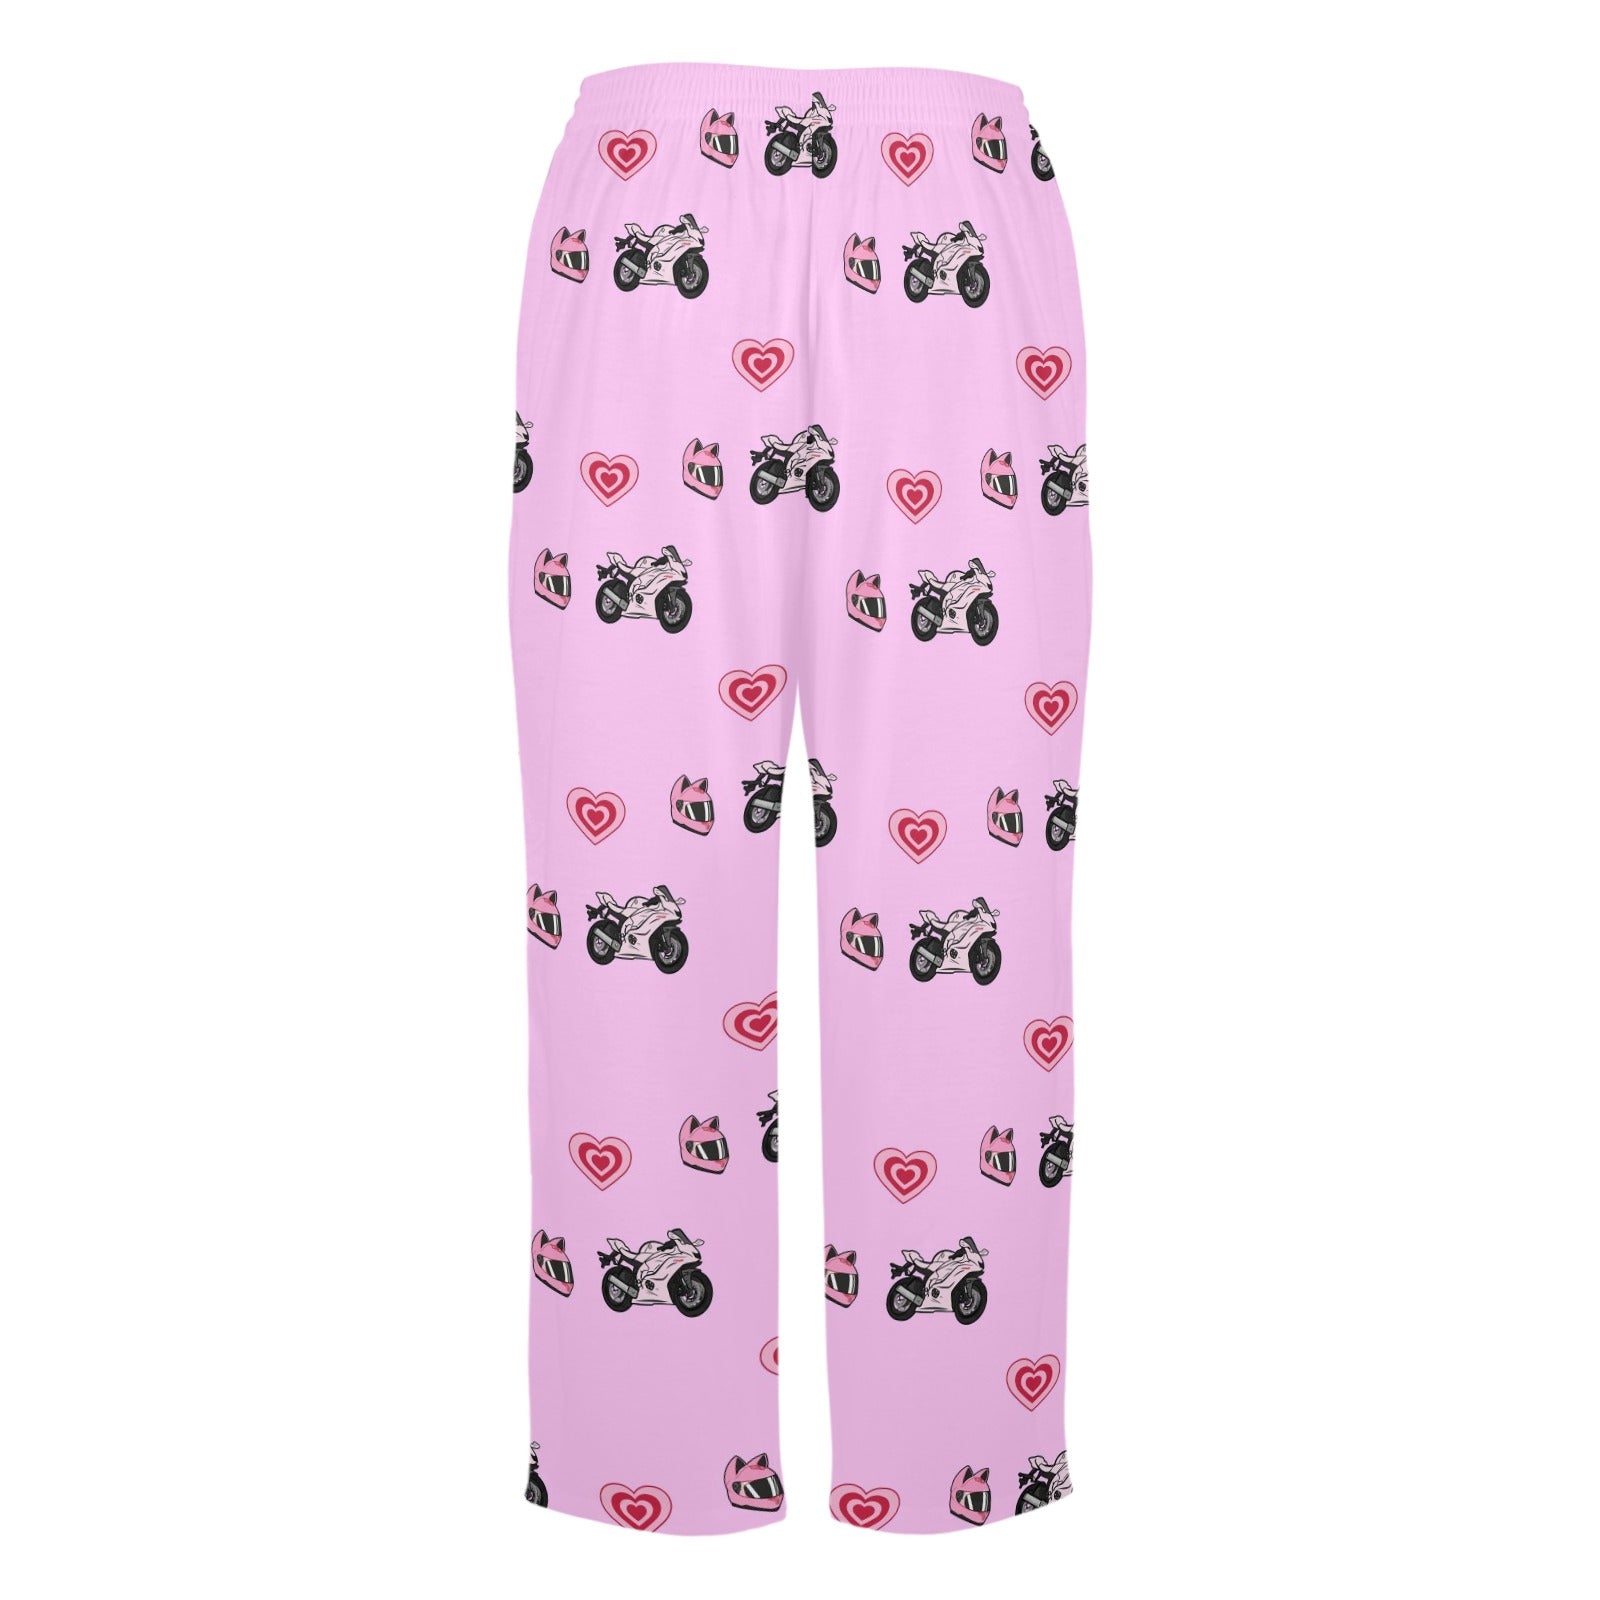 Yamaha R6 Pink Pajama Pants